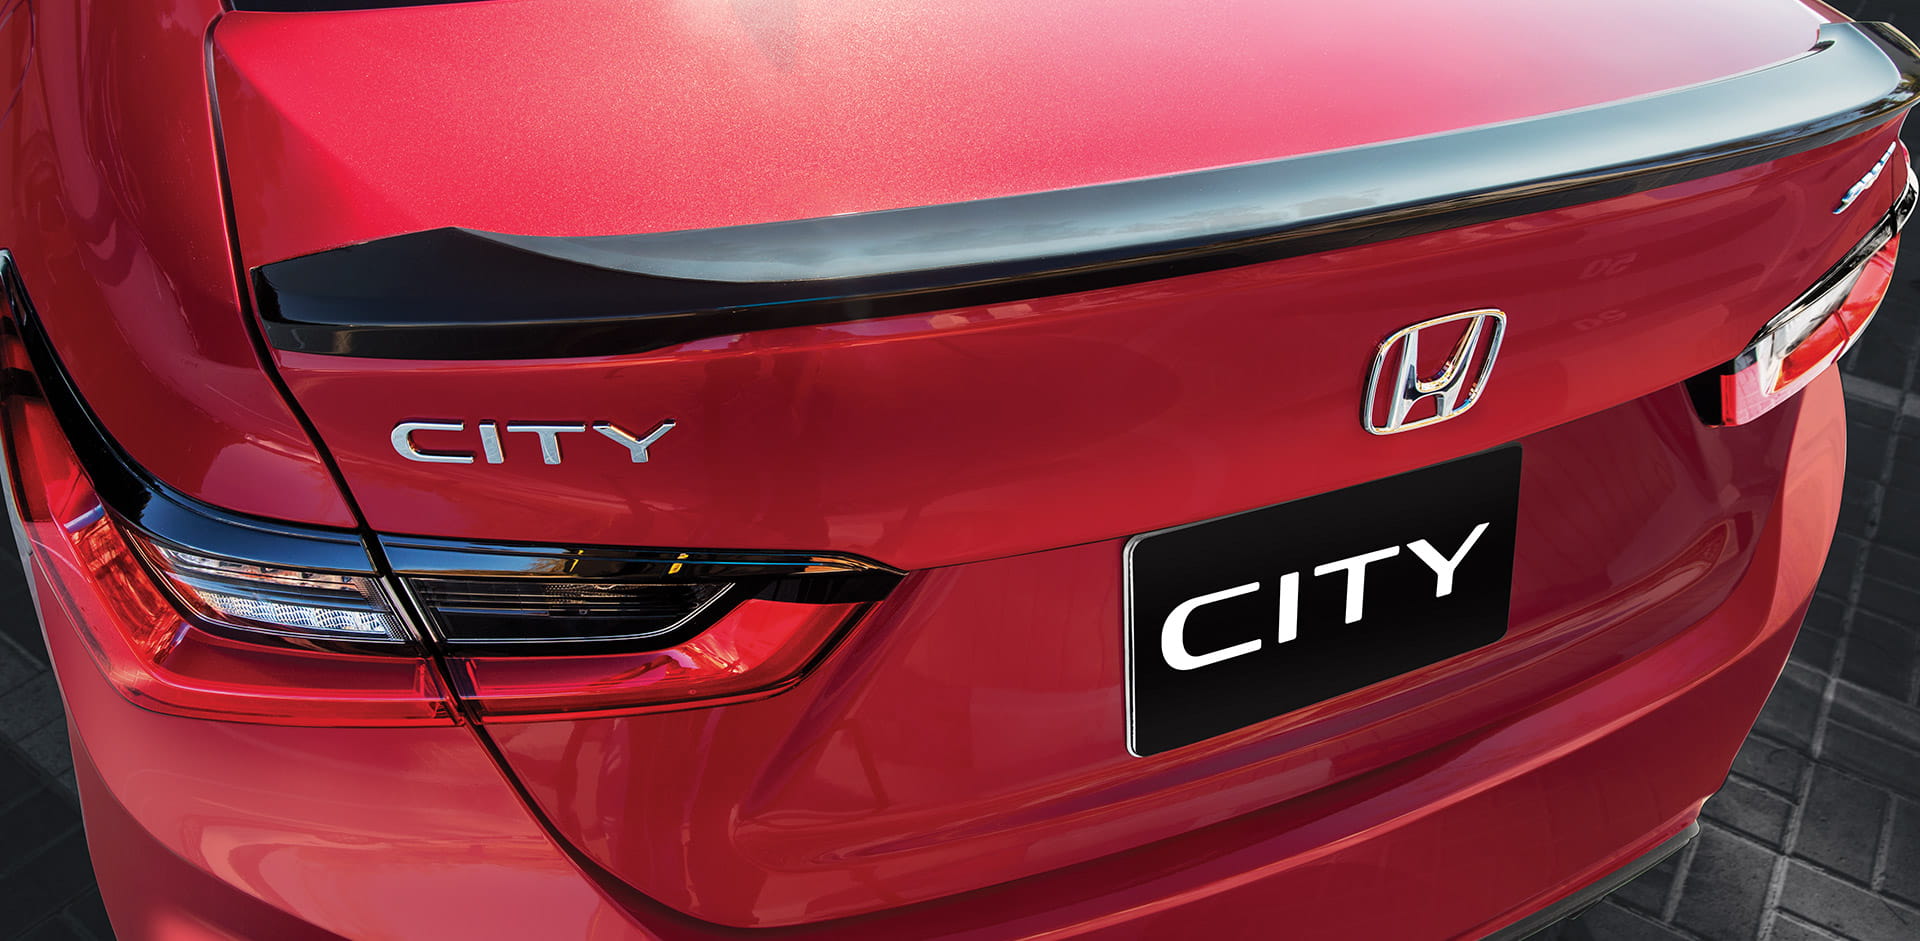 هوندا سيتي 2022 Honda City سيارة سيدان فاخرة تعرف على أهم مميزاتها وعيوبها 2